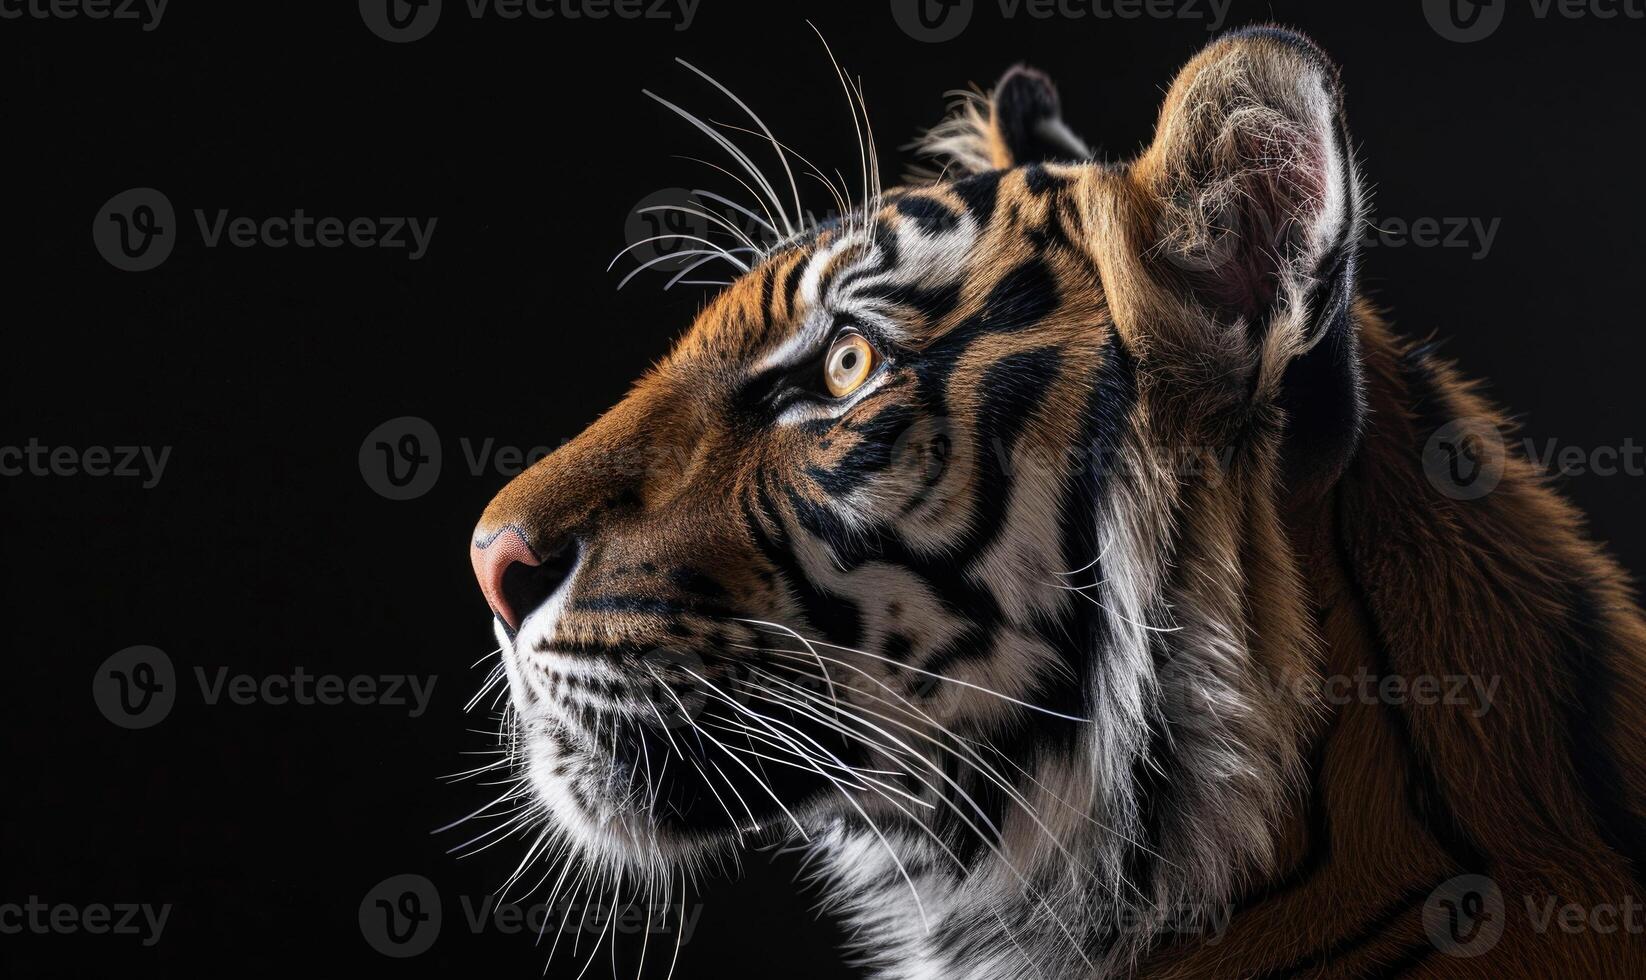 avvicinamento di un' siberiano di tigre viso sotto studio luci foto